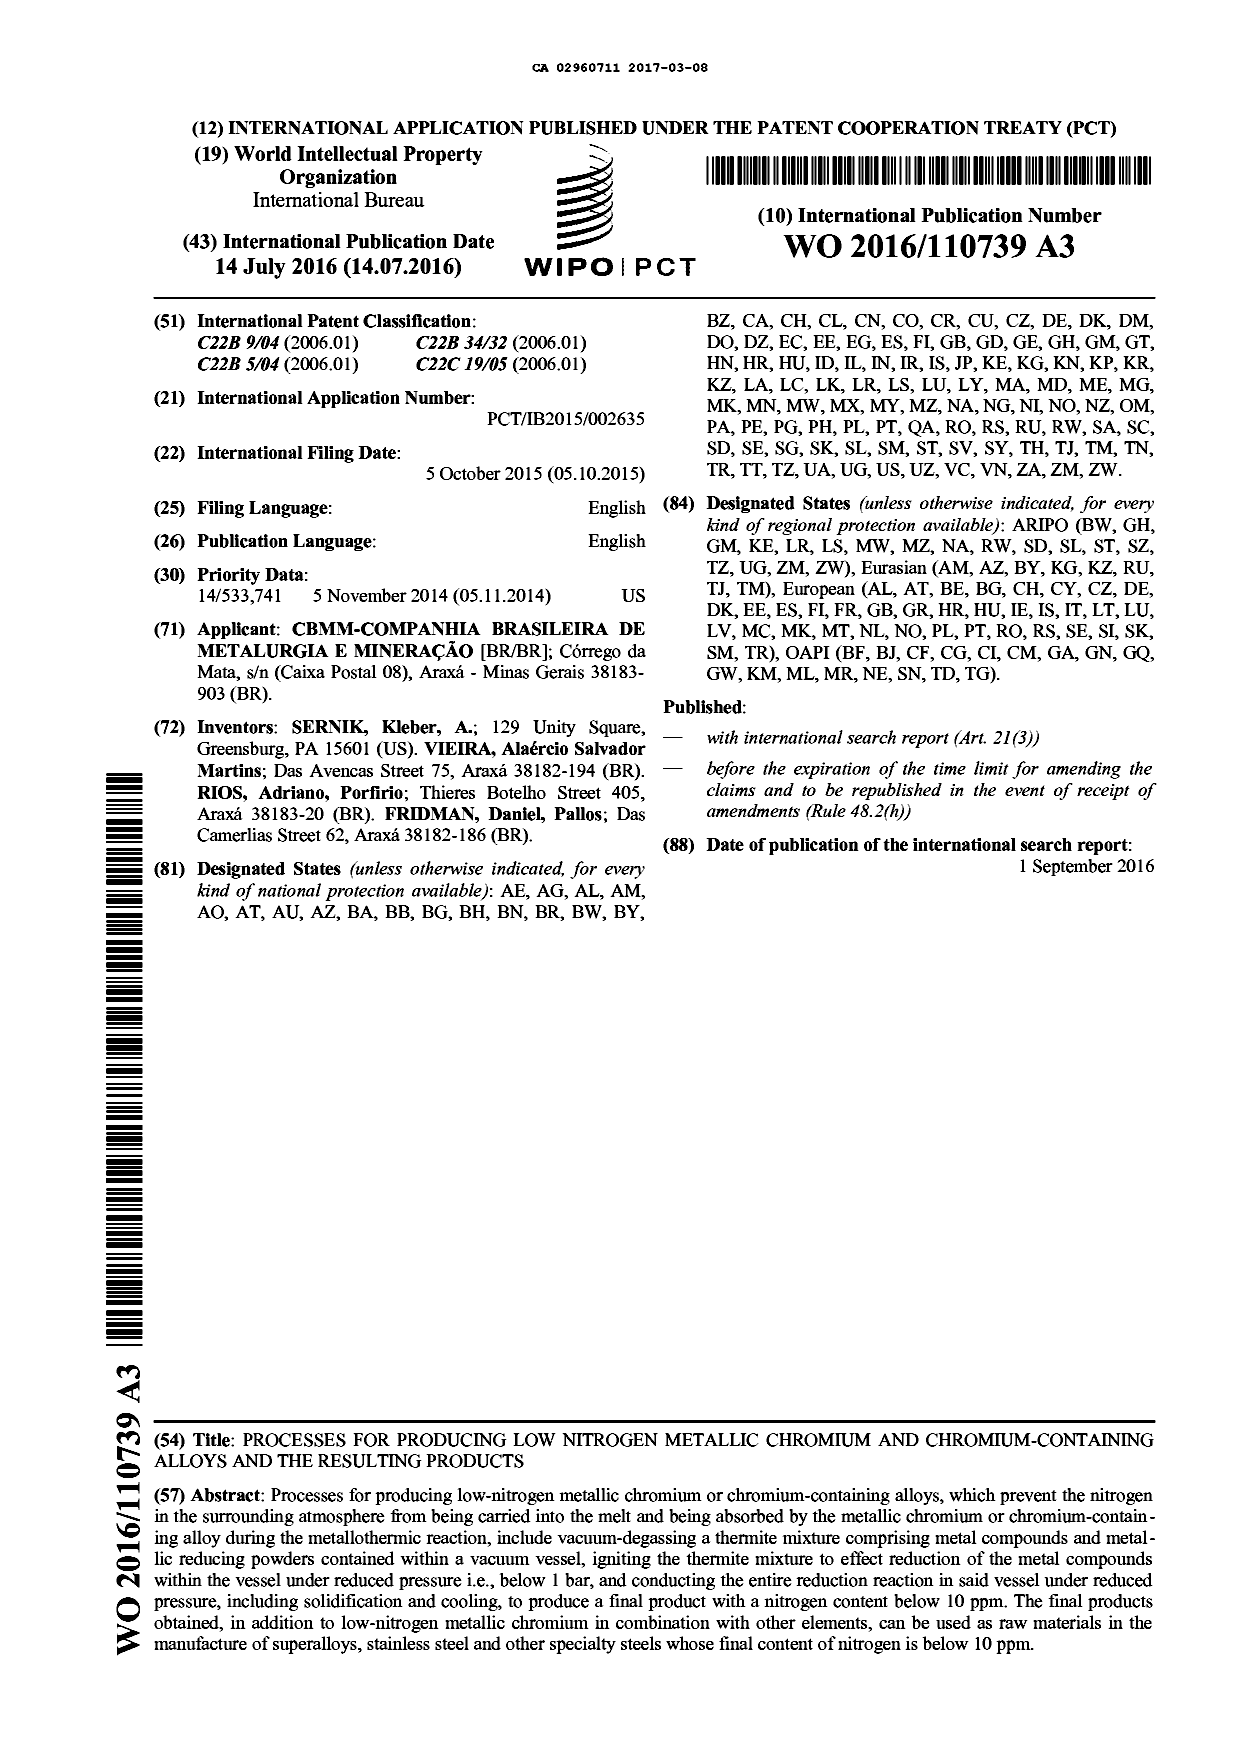 Document de brevet canadien 2960711. Abrégé 20170308. Image 1 de 1